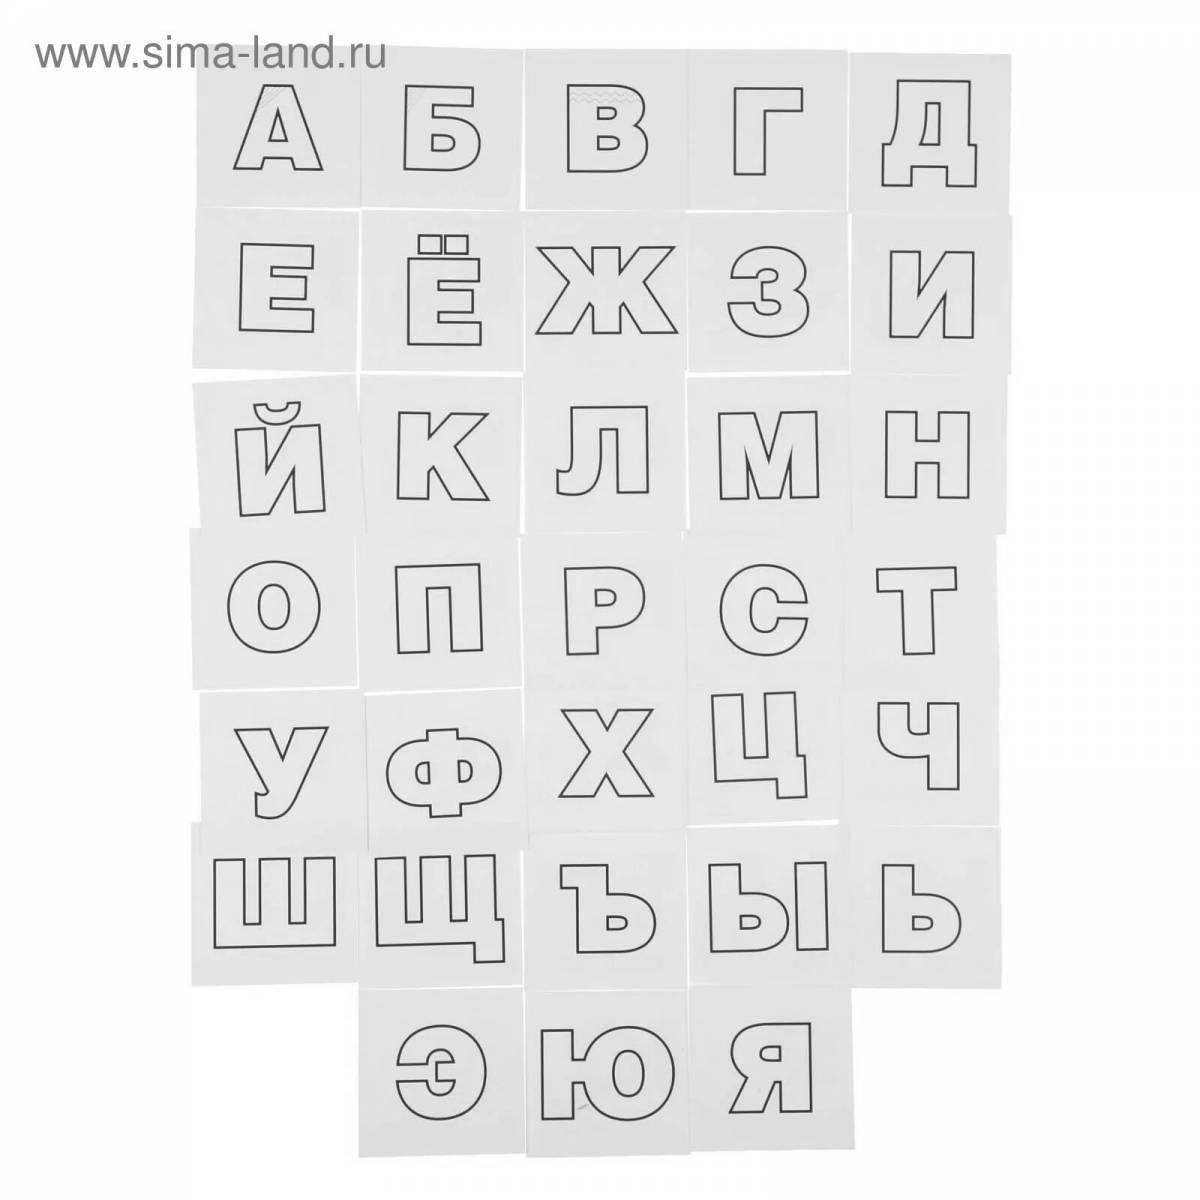 Привлекательный алфавит русский раскраска